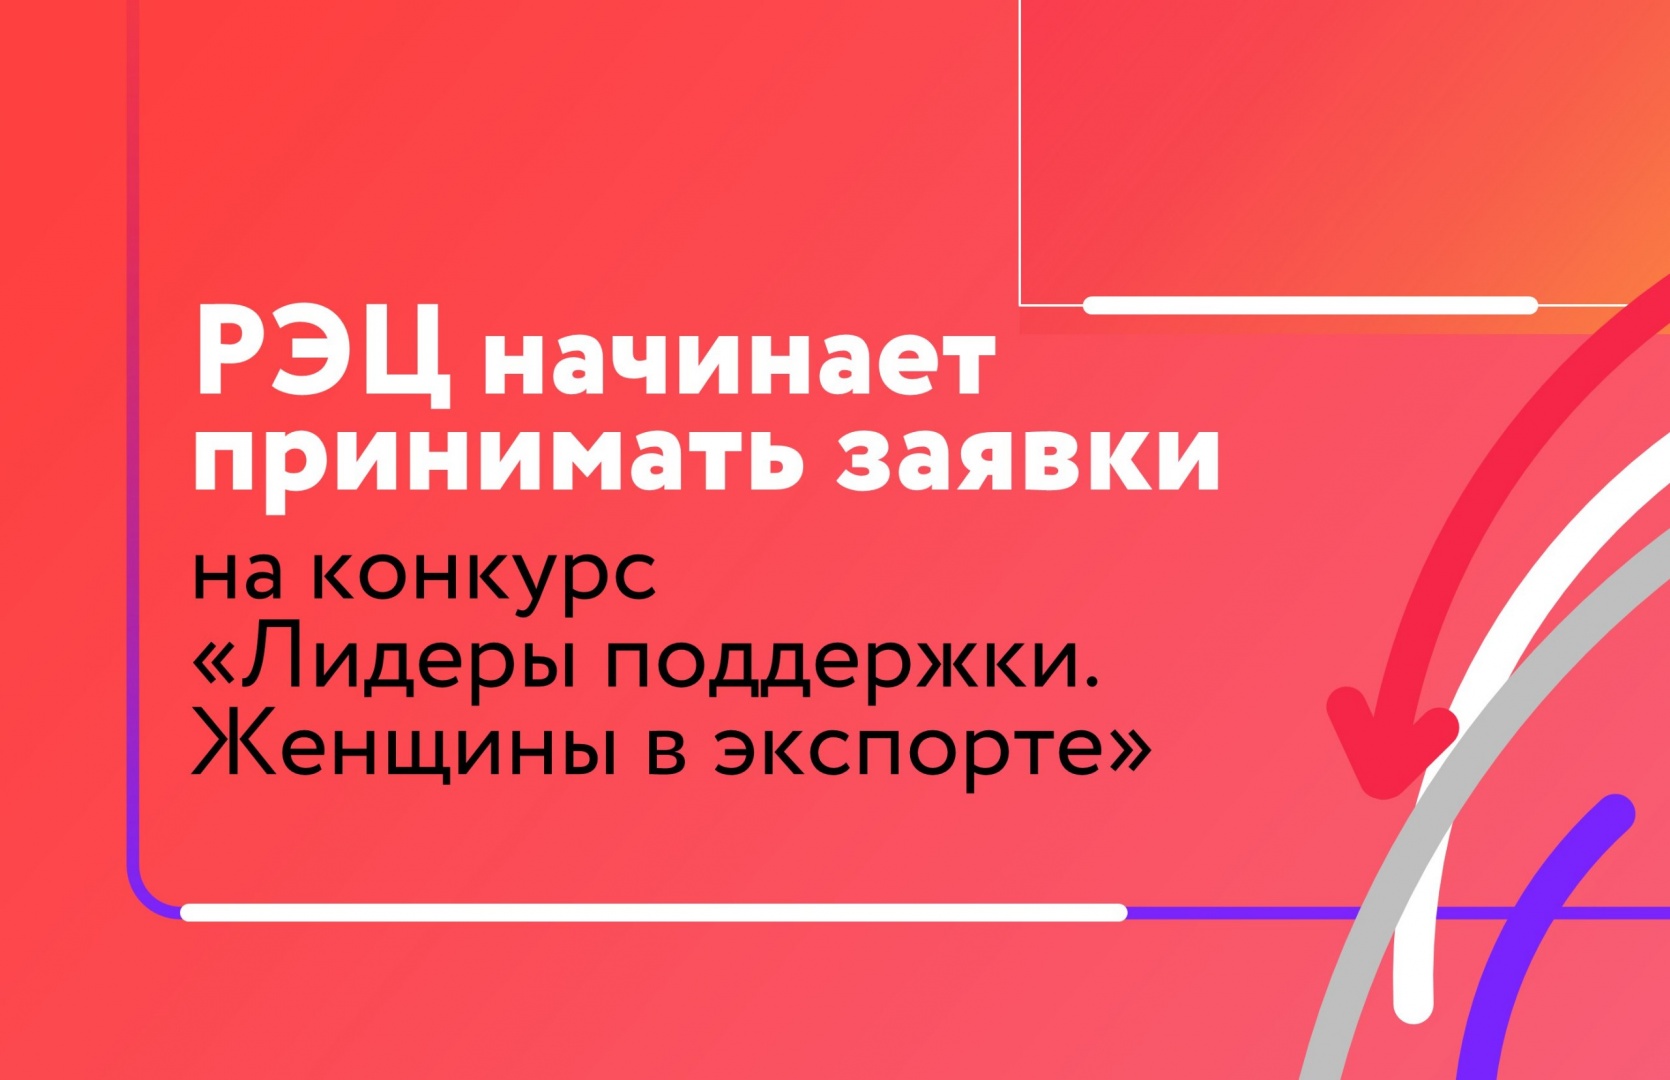 Российский экспортный центр объявил о старте Всероссийского конкурса «Лидеры поддержки. Женщины в экспорте»